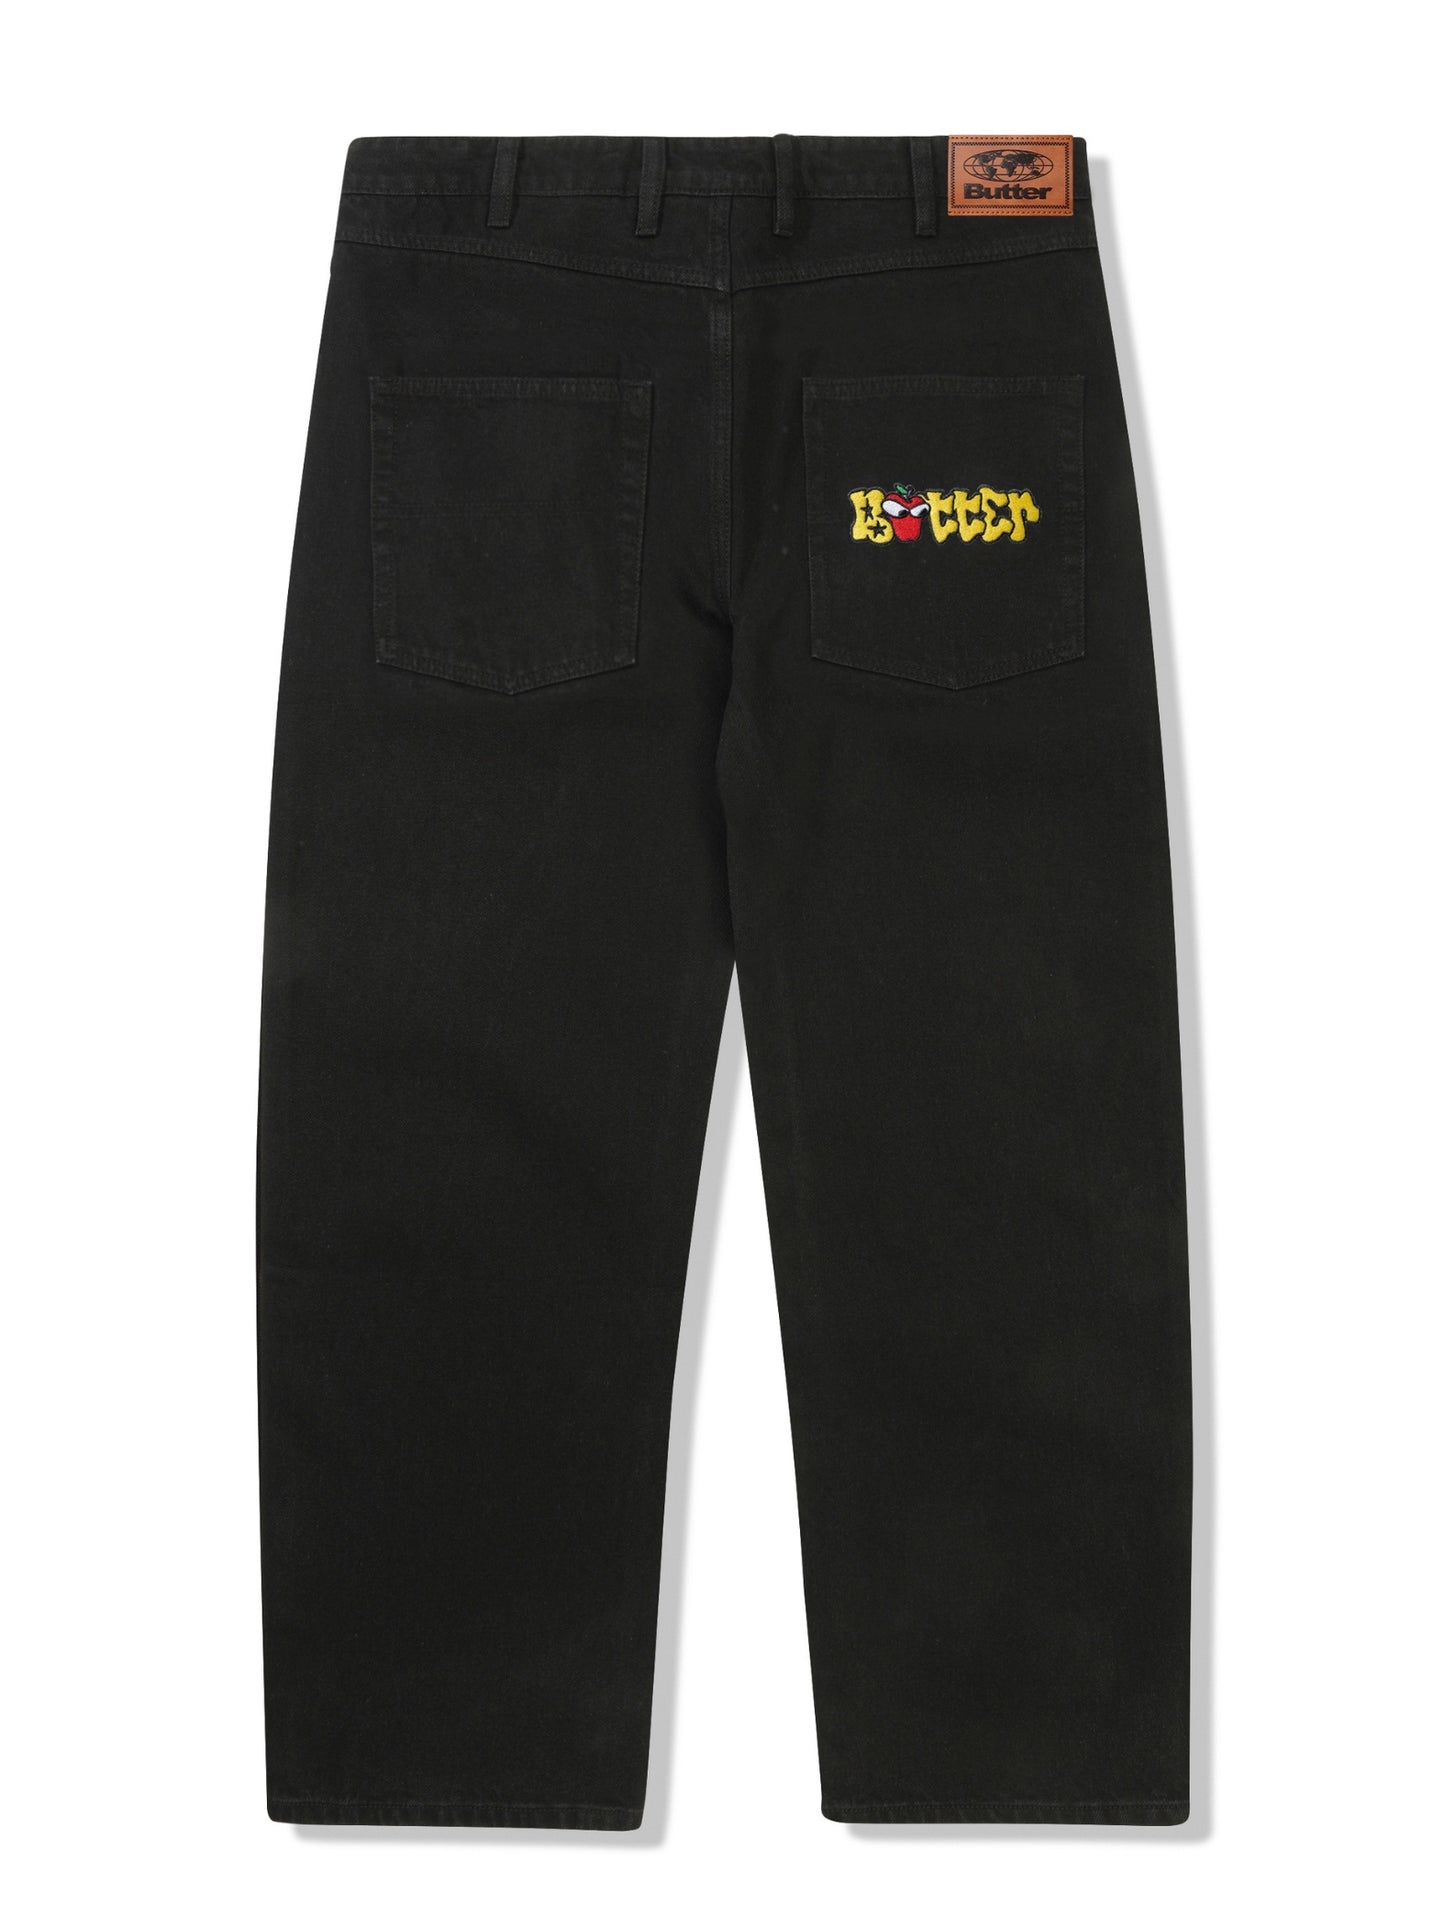 BUTTER GOODS Big Apple Denim Jeans - Washed Black